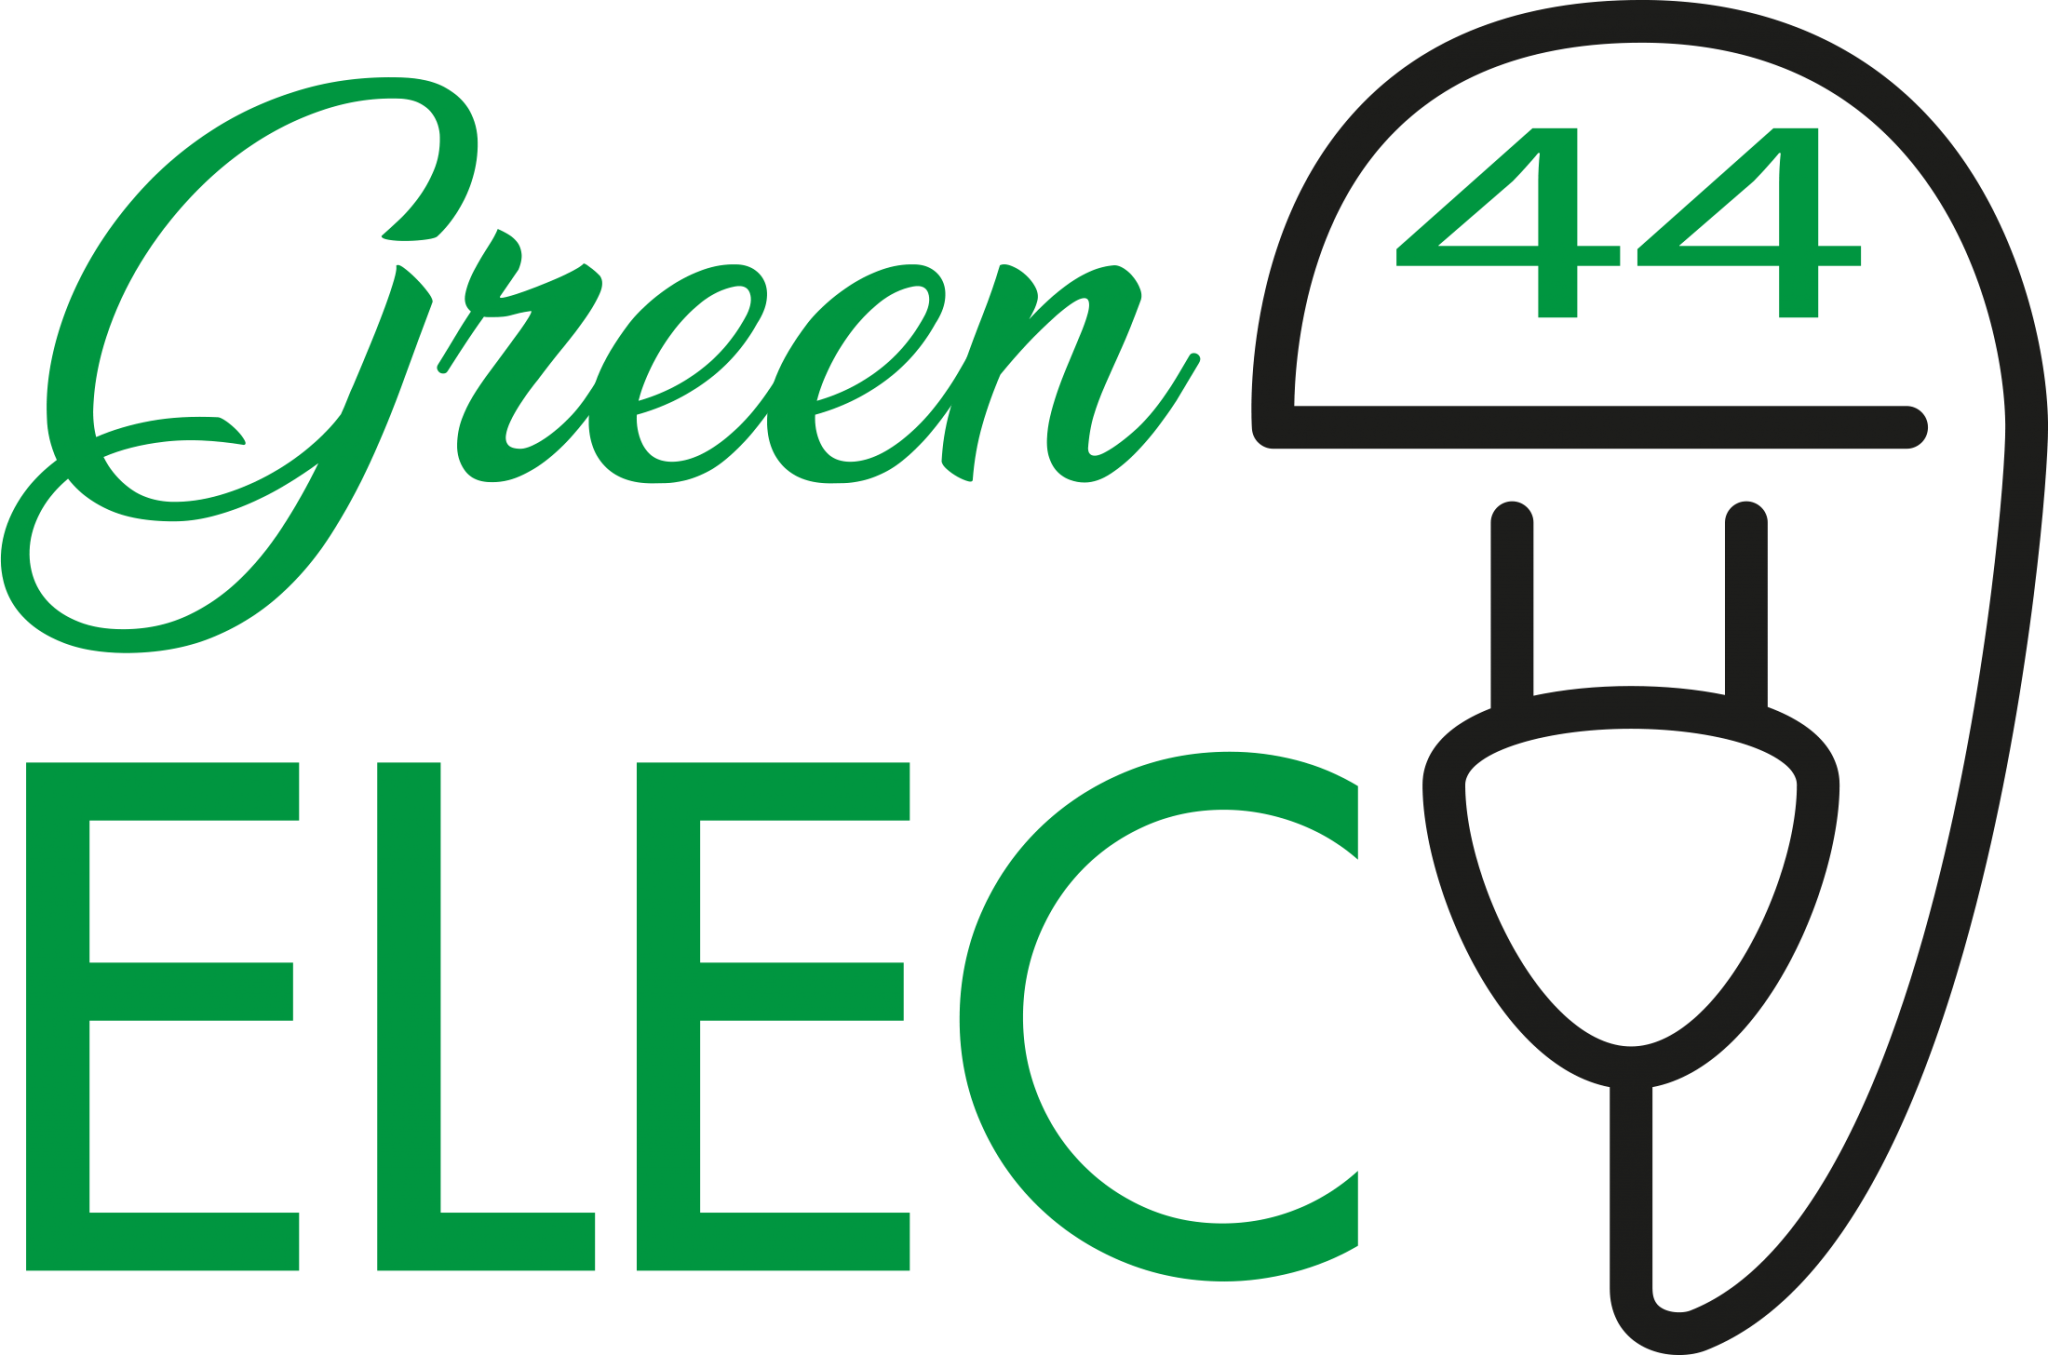 Green Elec 44